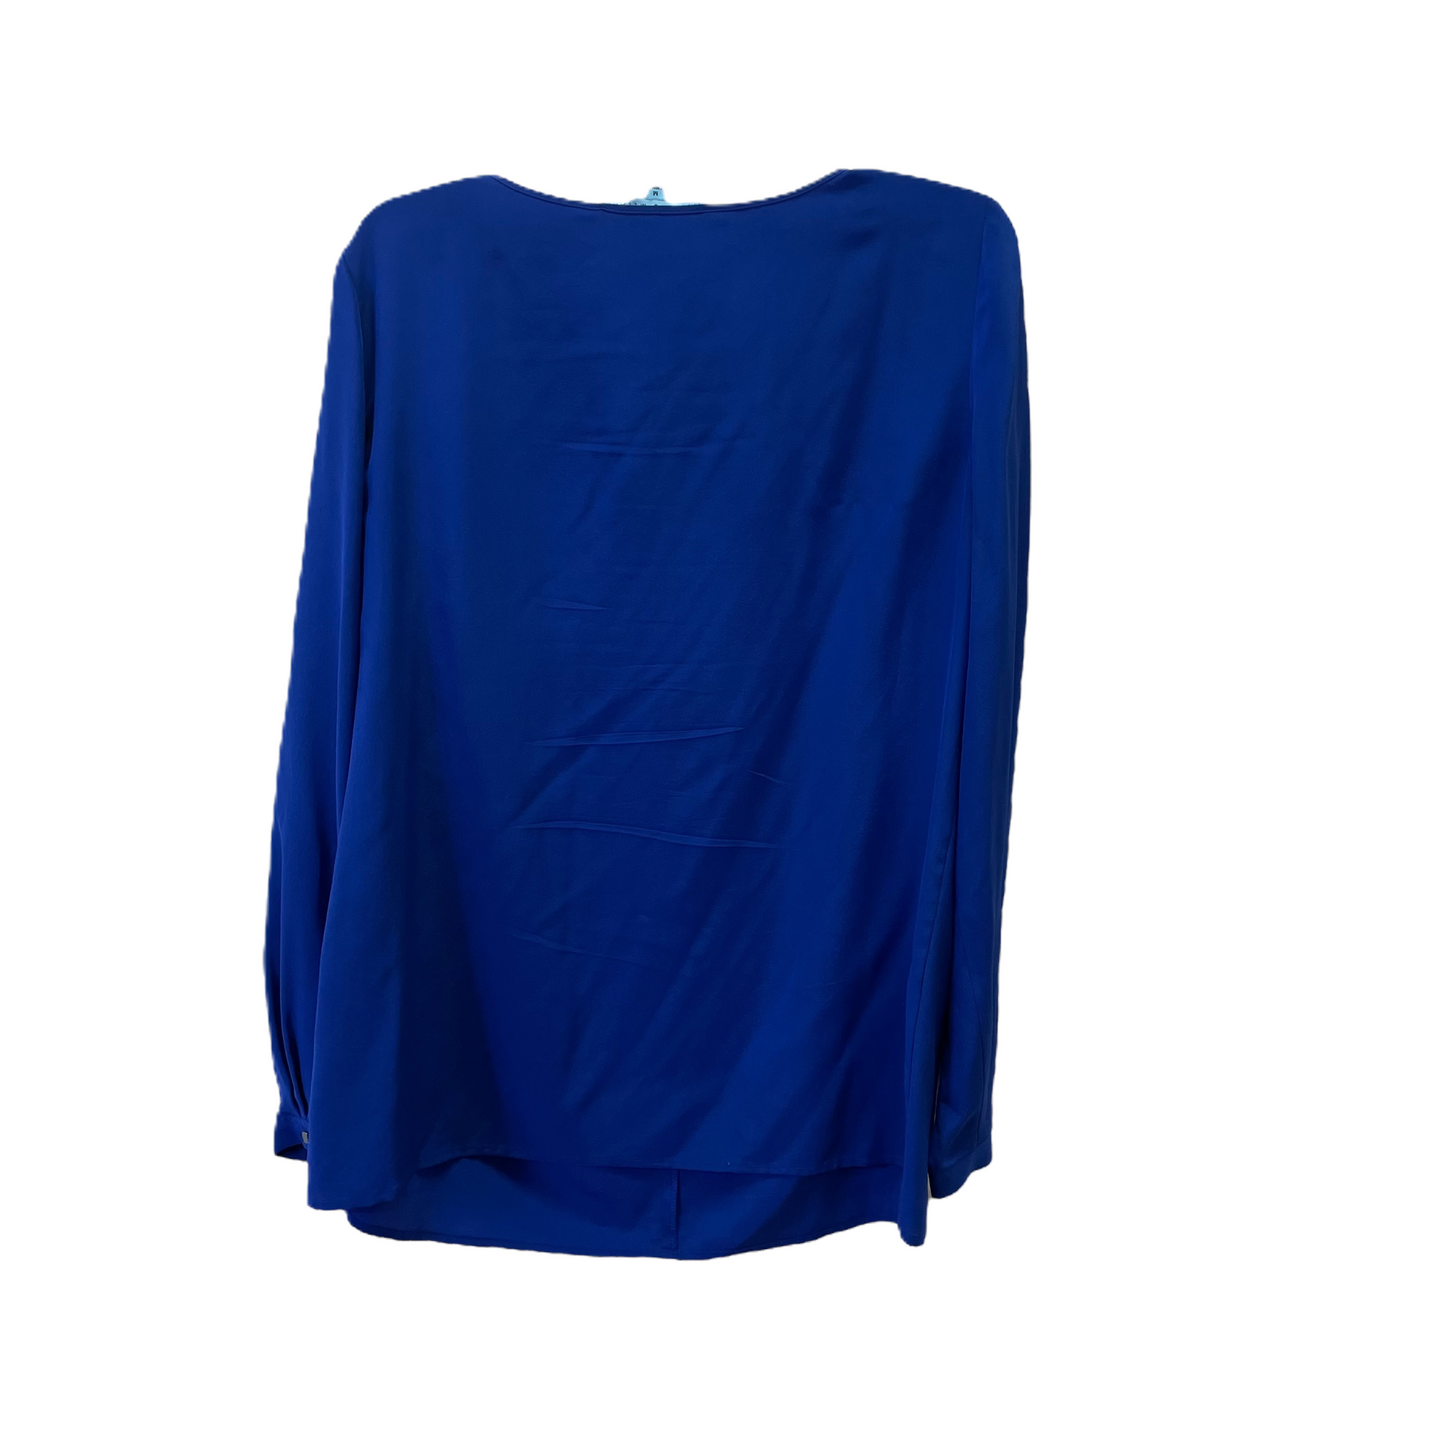 Blue Top Long Sleeve Basic By Antonio Melani, Size: M